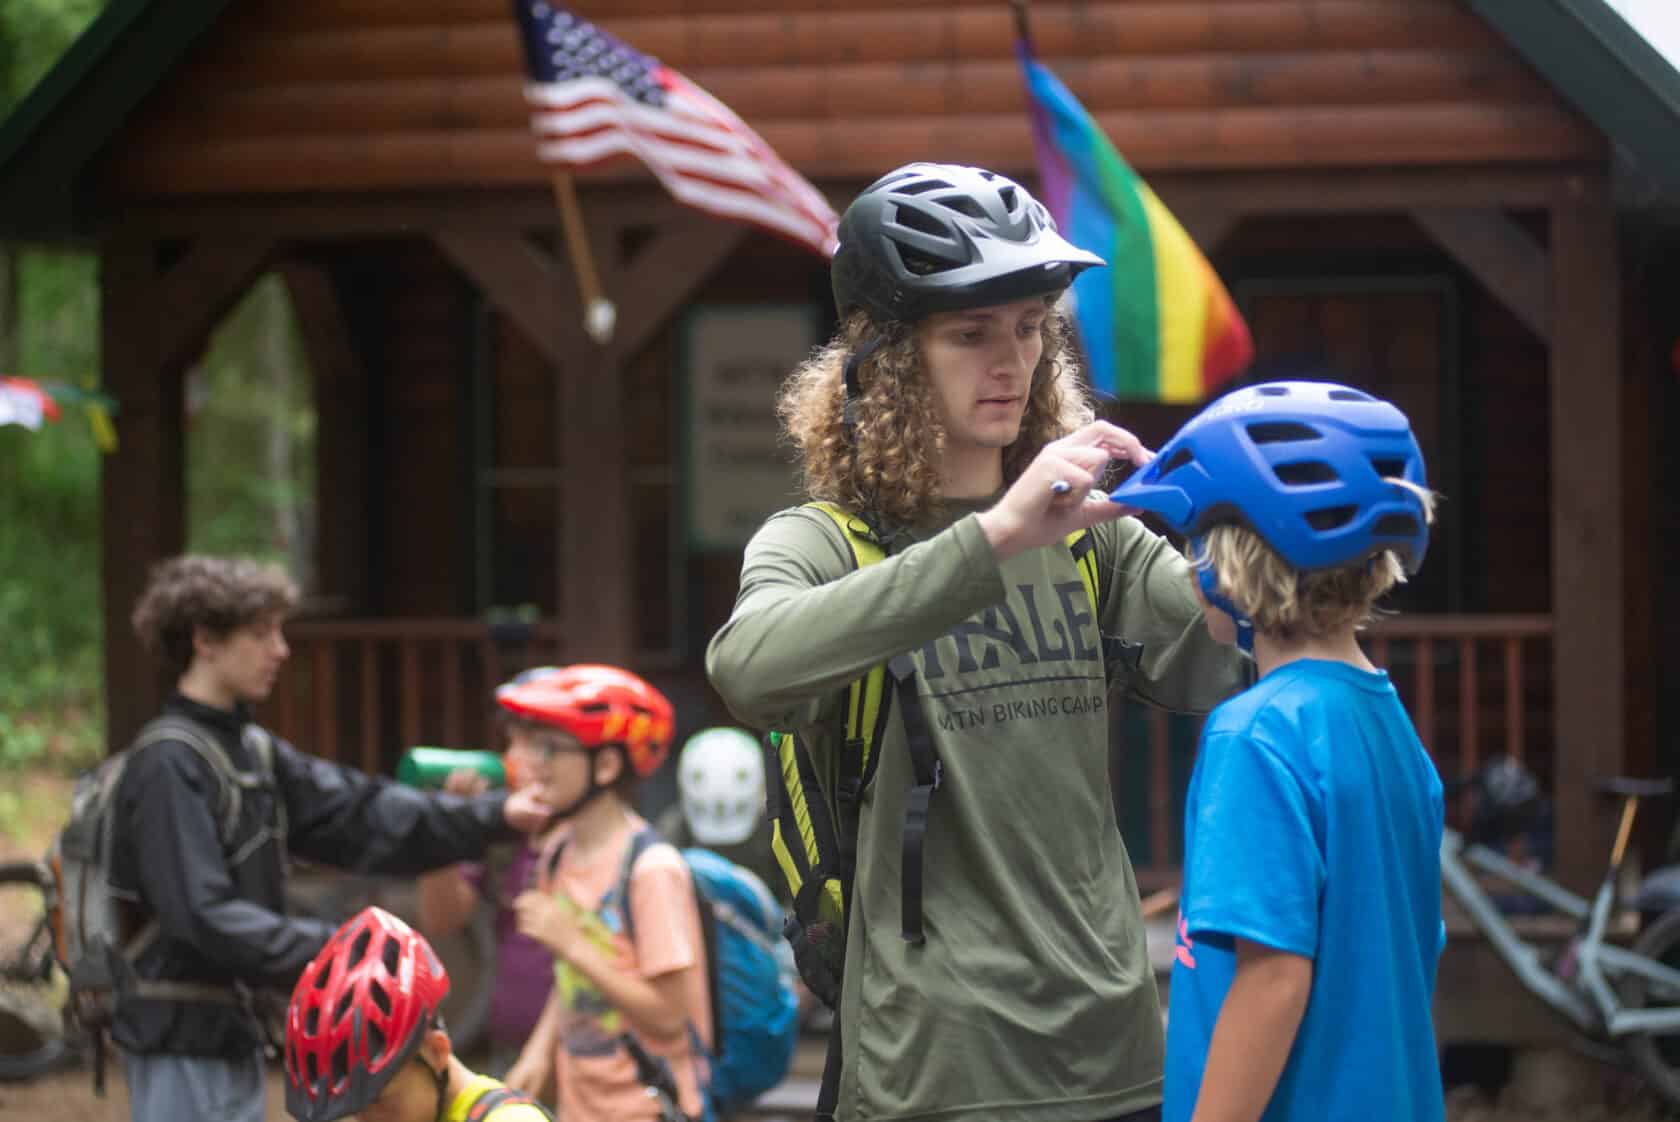 Counselor adjusting bike helmet on camper.